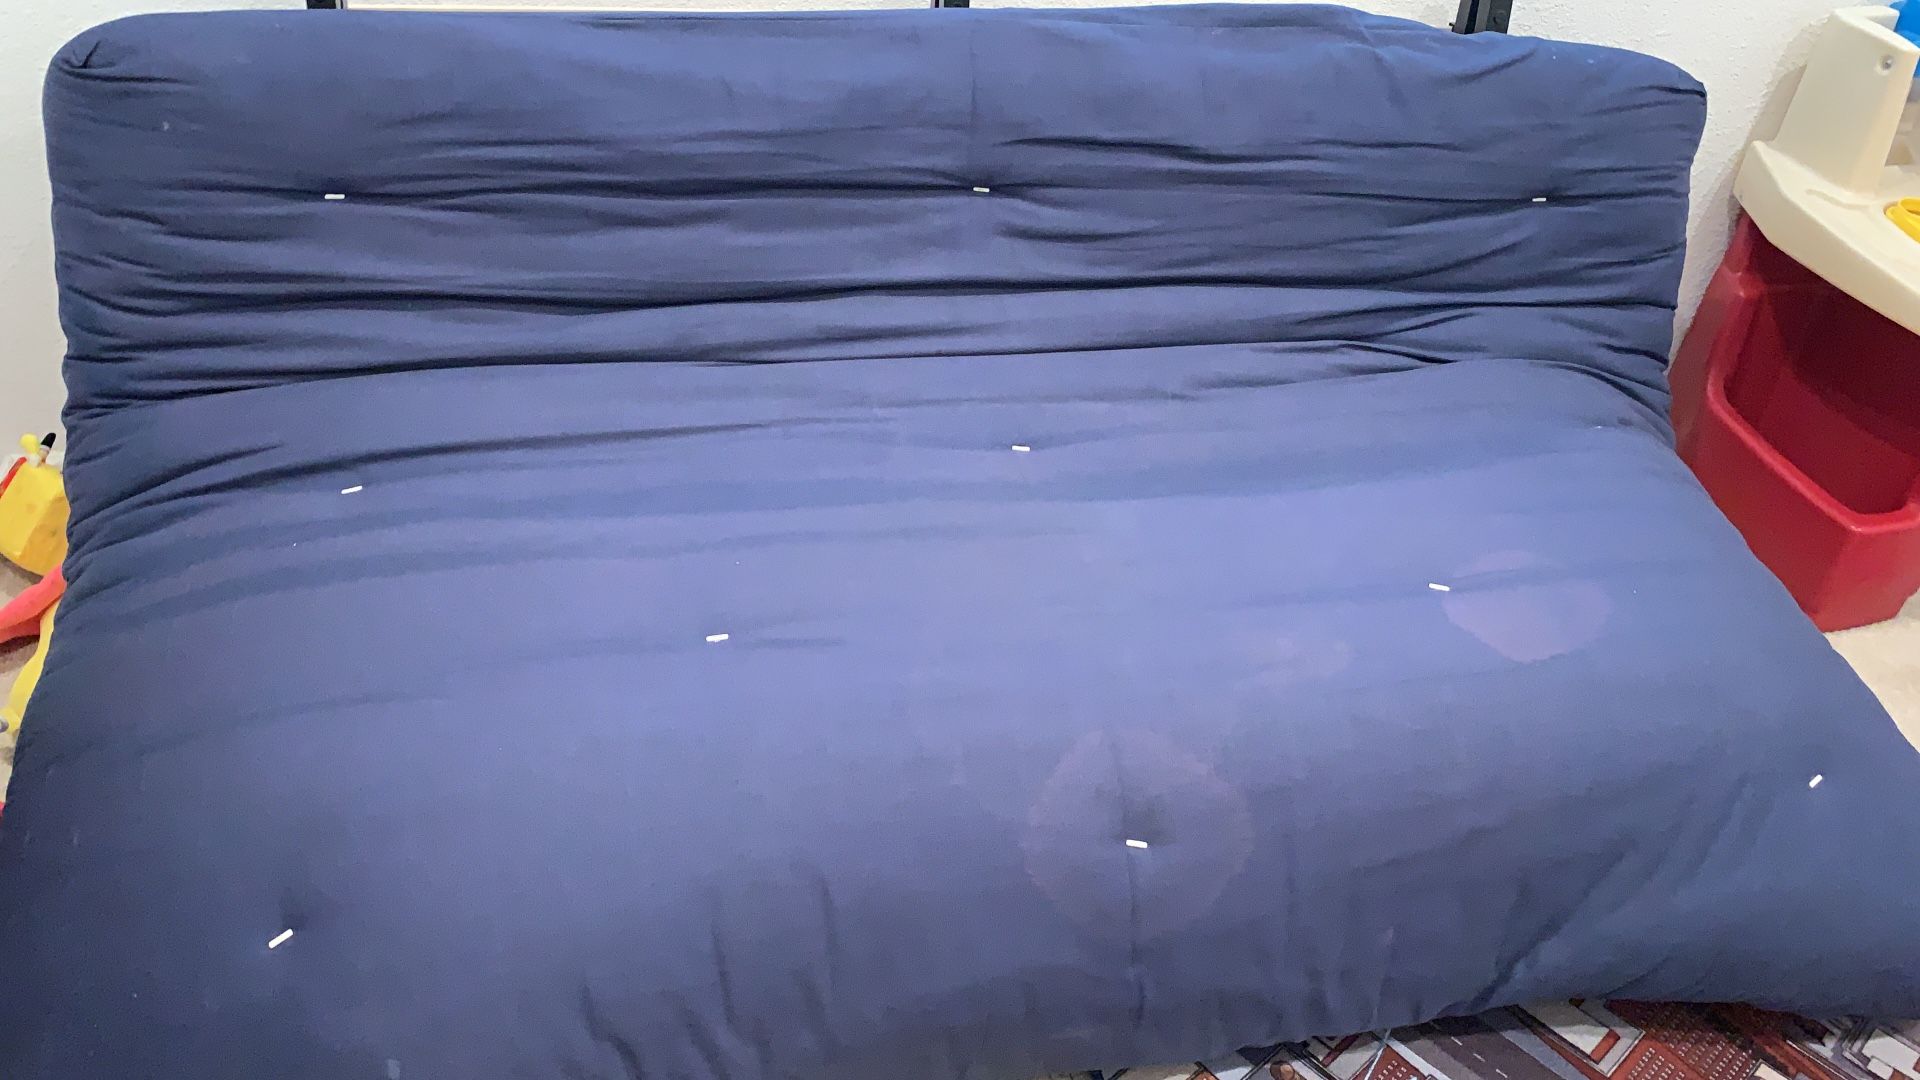 Futon mattress